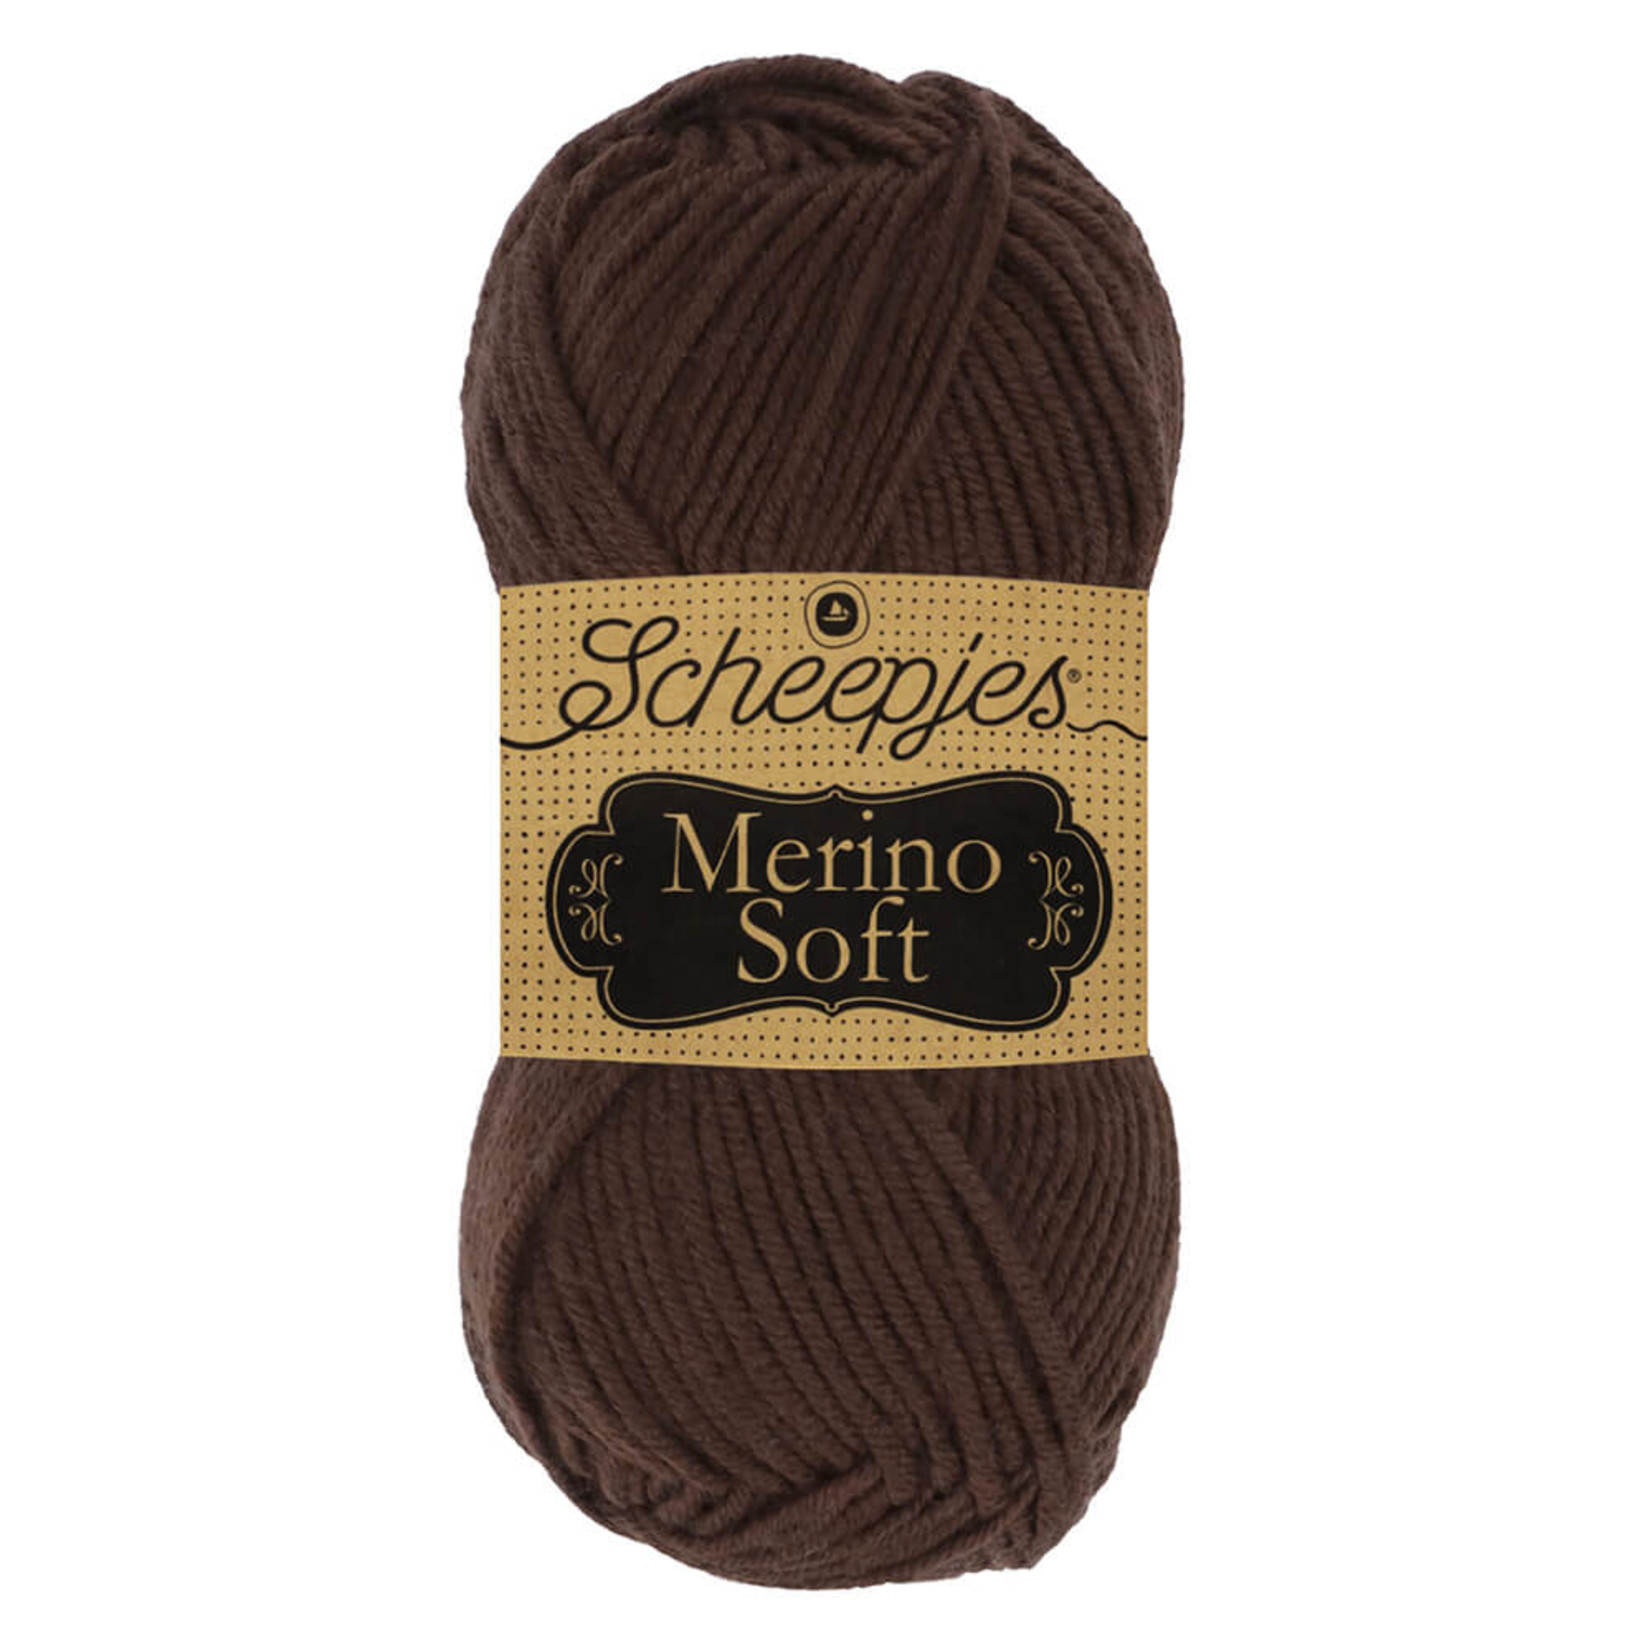 Scheepjes Merino Soft 609 Rembrandt